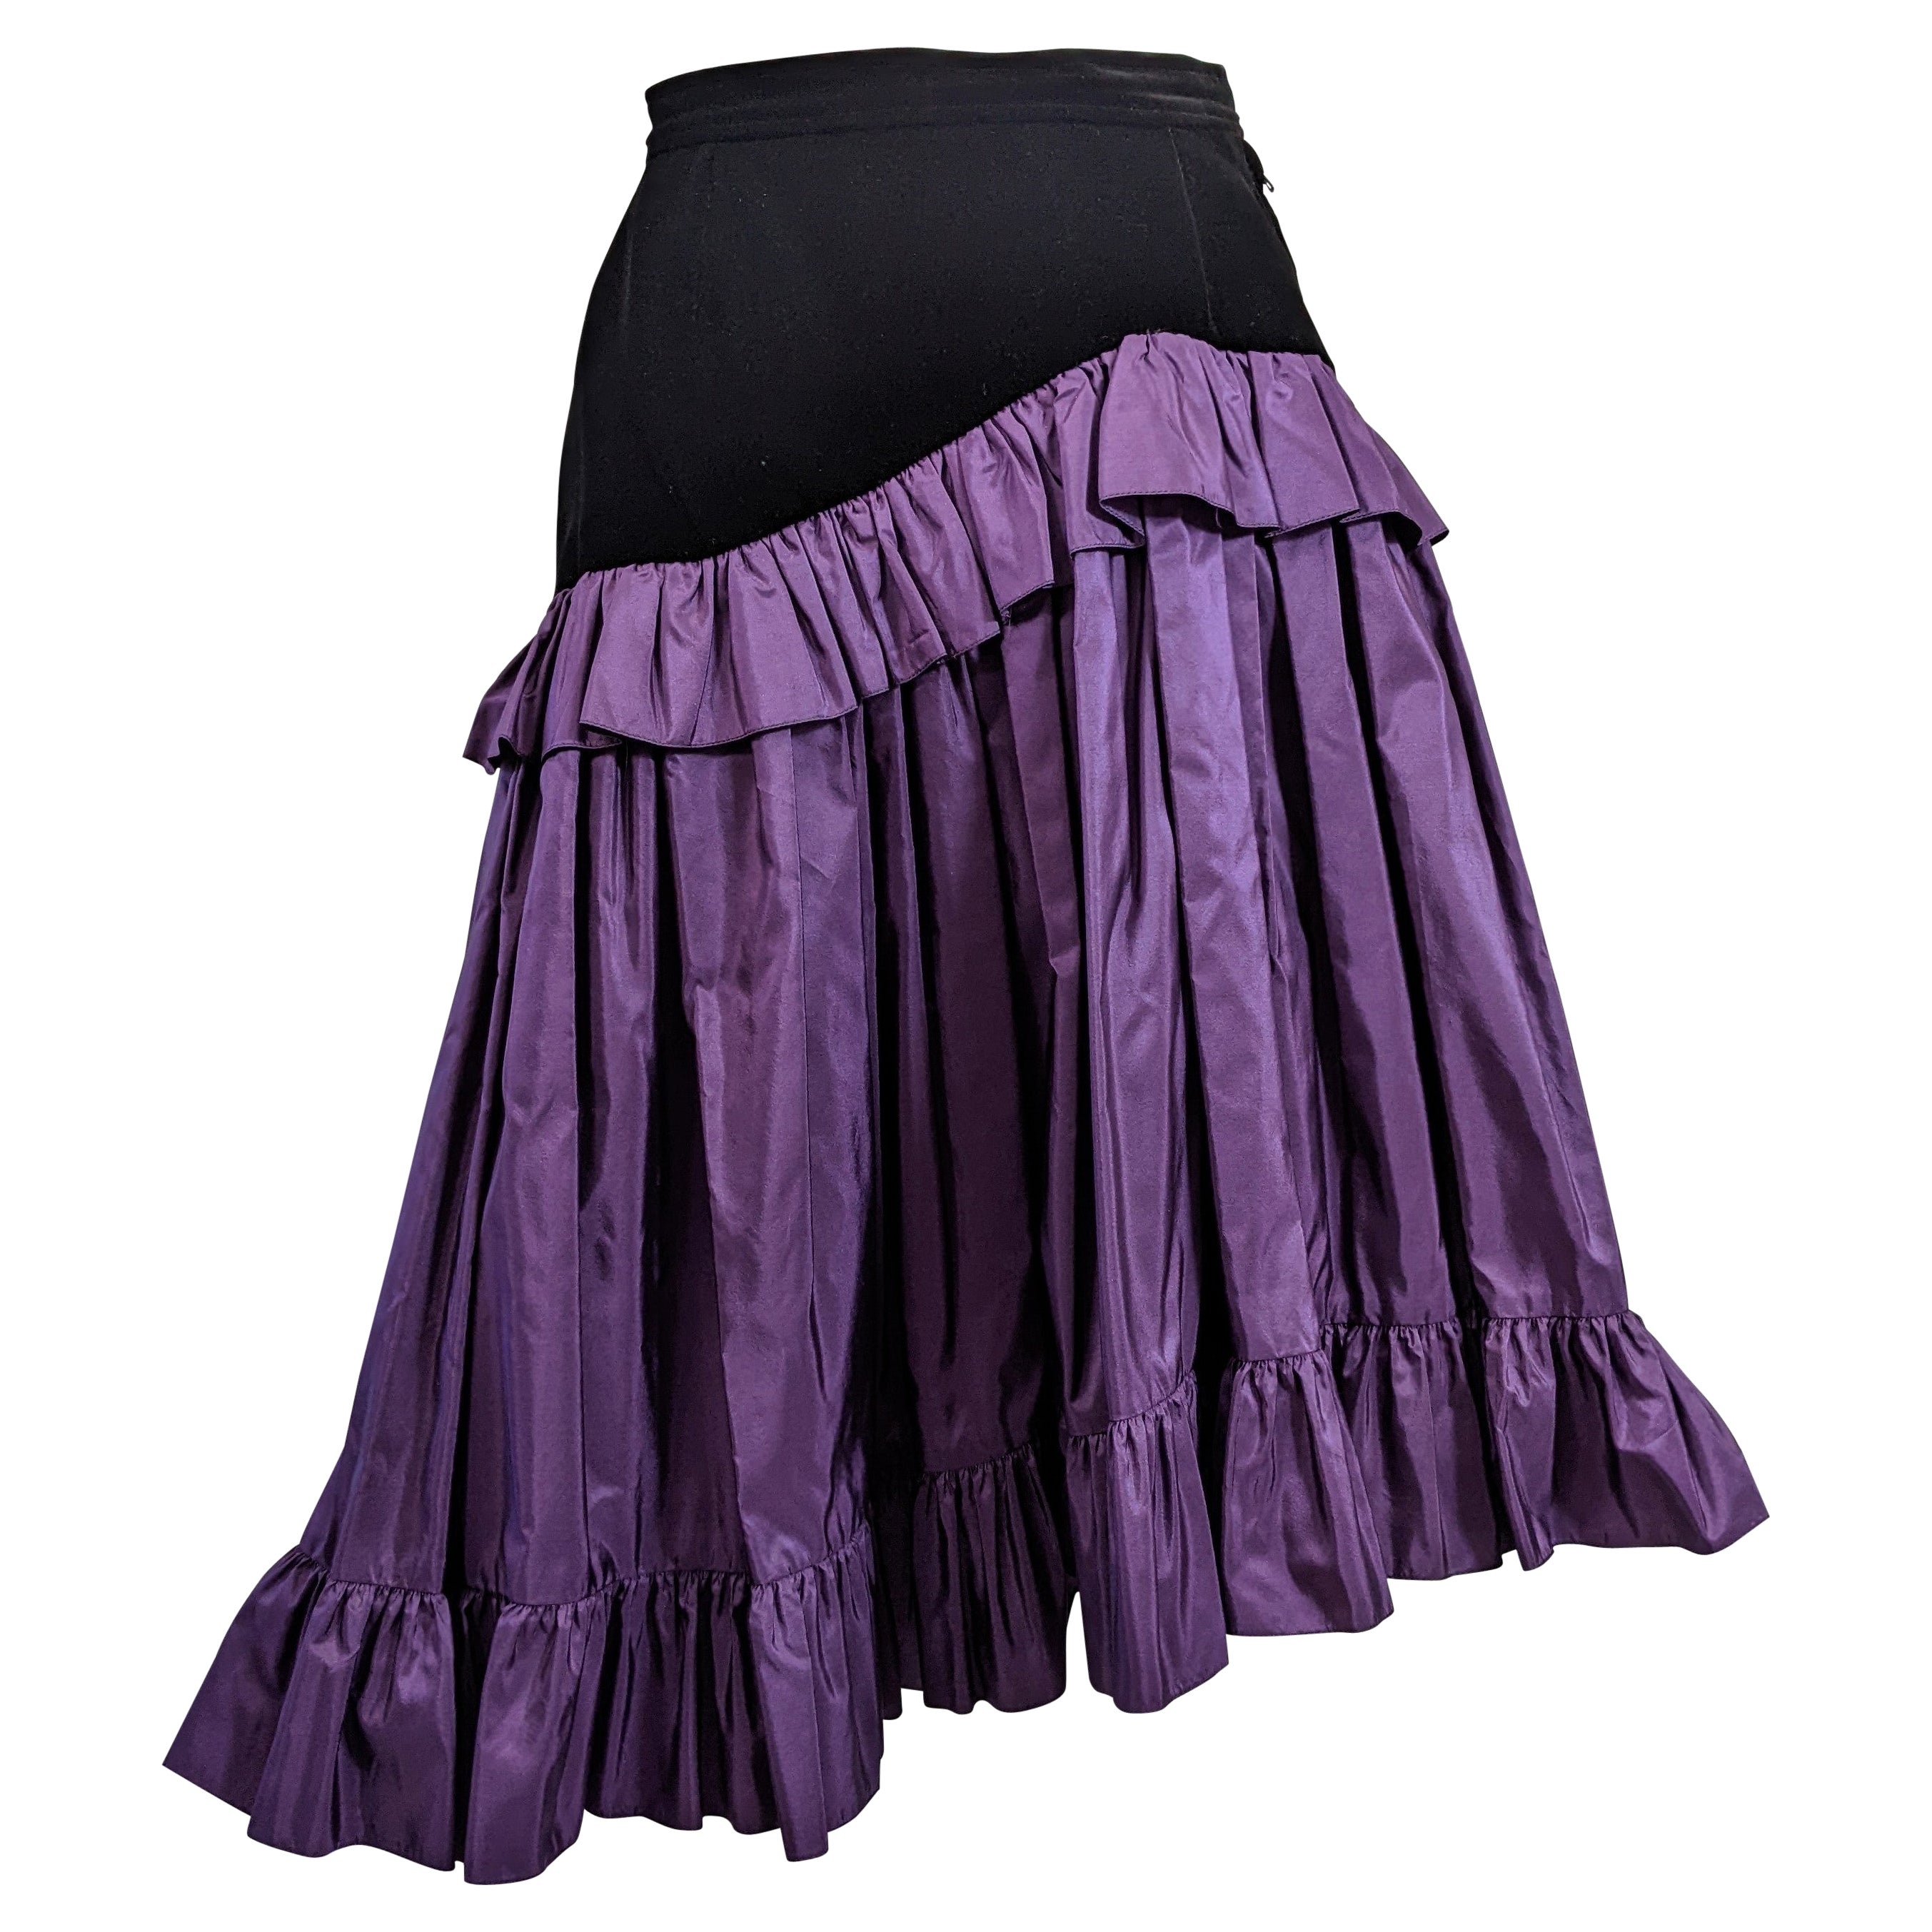 Yves Saint Laurent Velvet and Taffeta Skirt, Russian Collection